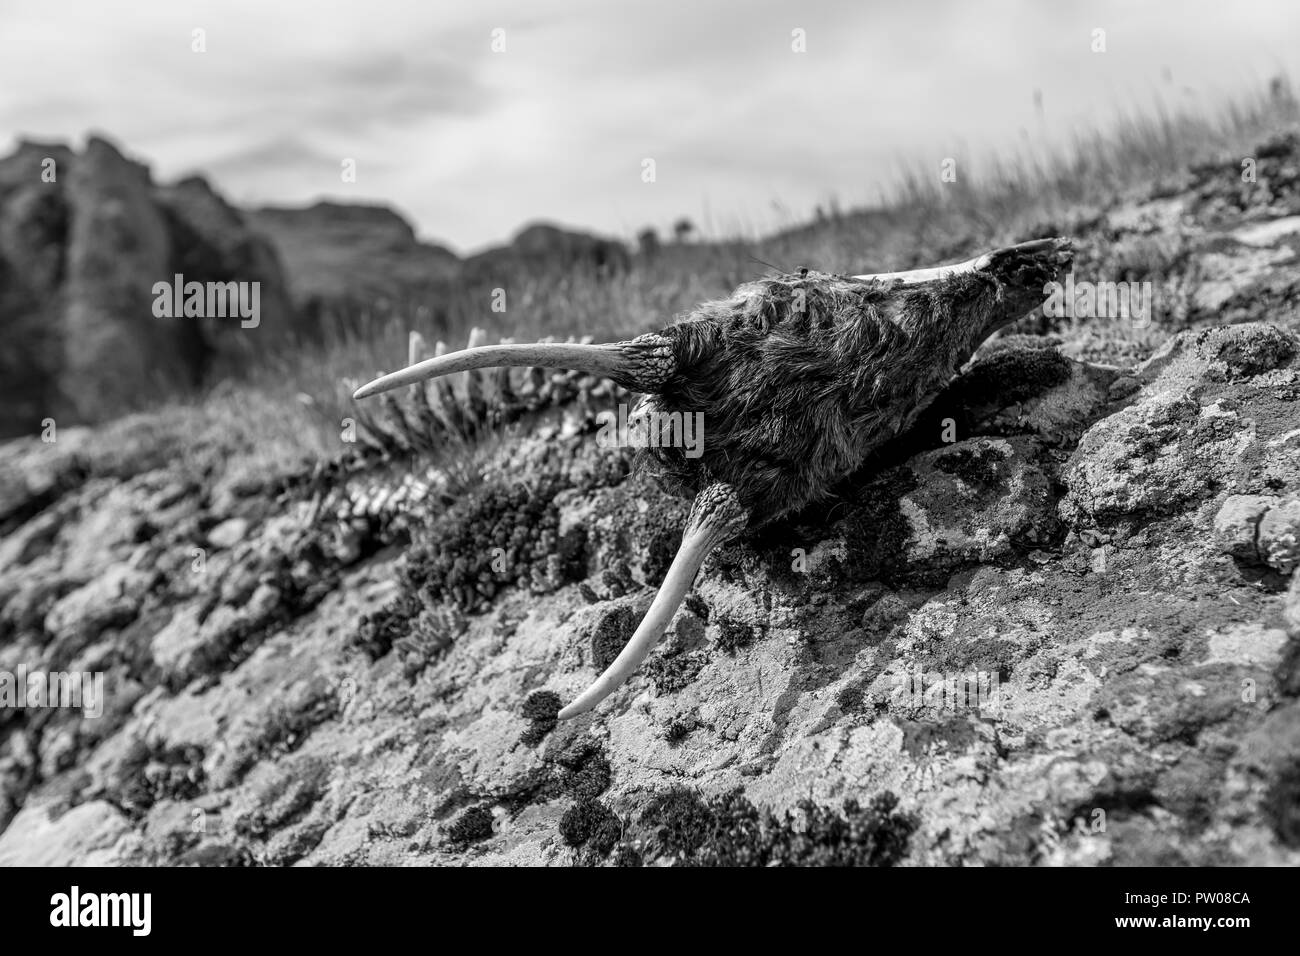 Ziegenkopf skelett Schwarzweiß-Stockfotos und -bilder - Alamy